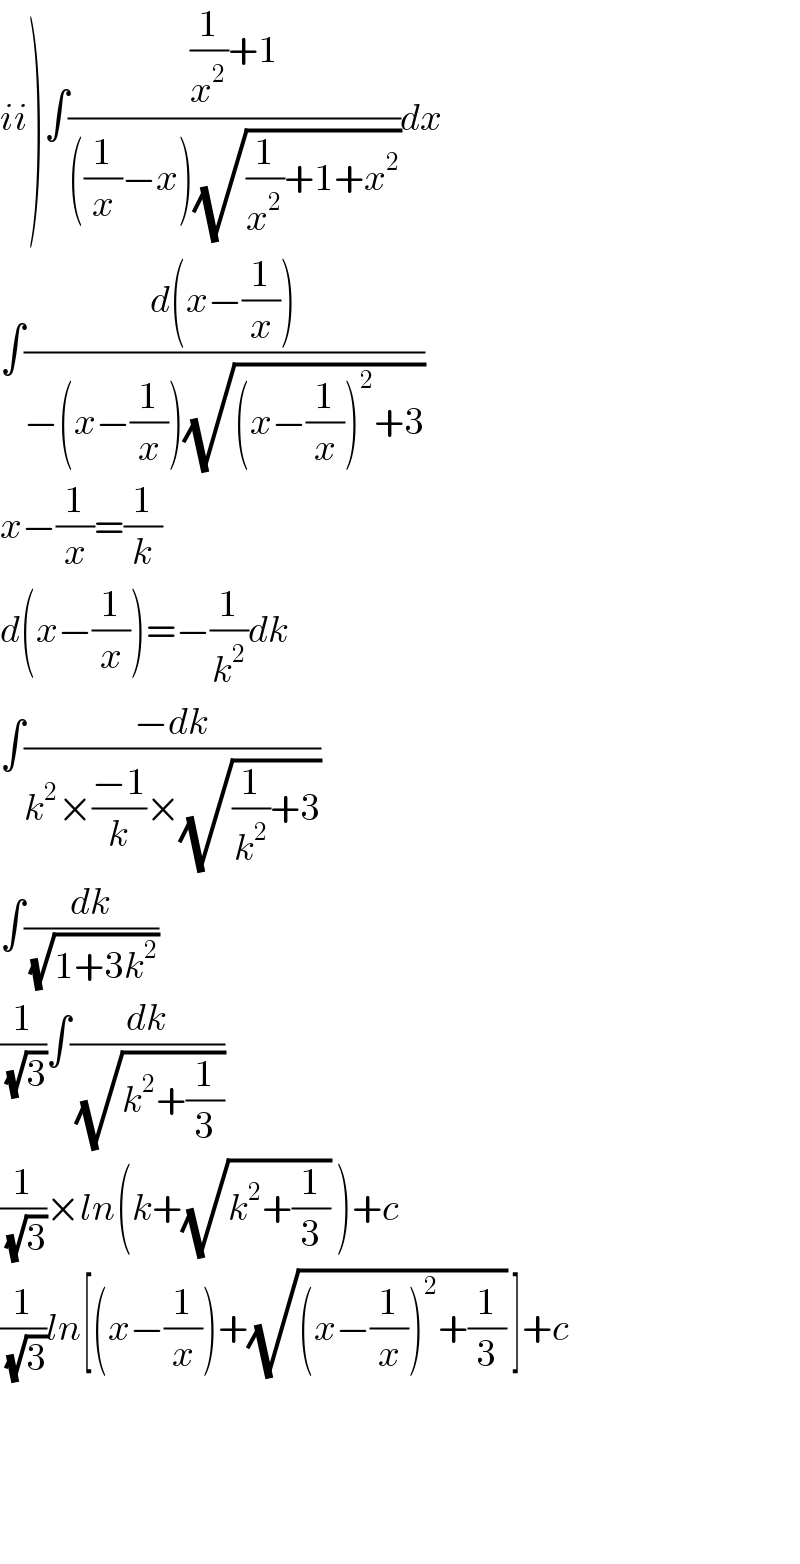 ii)∫(((1/x^2 )+1)/(((1/x)−x)(√((1/x^2 )+1+x^2 ))))dx  ∫((d(x−(1/x)))/(−(x−(1/x))(√((x−(1/x))^2 +3))))  x−(1/x)=(1/k)  d(x−(1/x))=−(1/k^2 )dk  ∫((−dk)/(k^2 ×((−1)/k)×(√((1/k^2 )+3))))  ∫(dk/(√(1+3k^2 )))  (1/(√3))∫(dk/(√(k^2 +(1/3))))  (1/(√3))×ln(k+(√(k^2 +(1/3))) )+c  (1/(√3))ln[(x−(1/x))+(√((x−(1/x))^2 +(1/3))) ]+c        